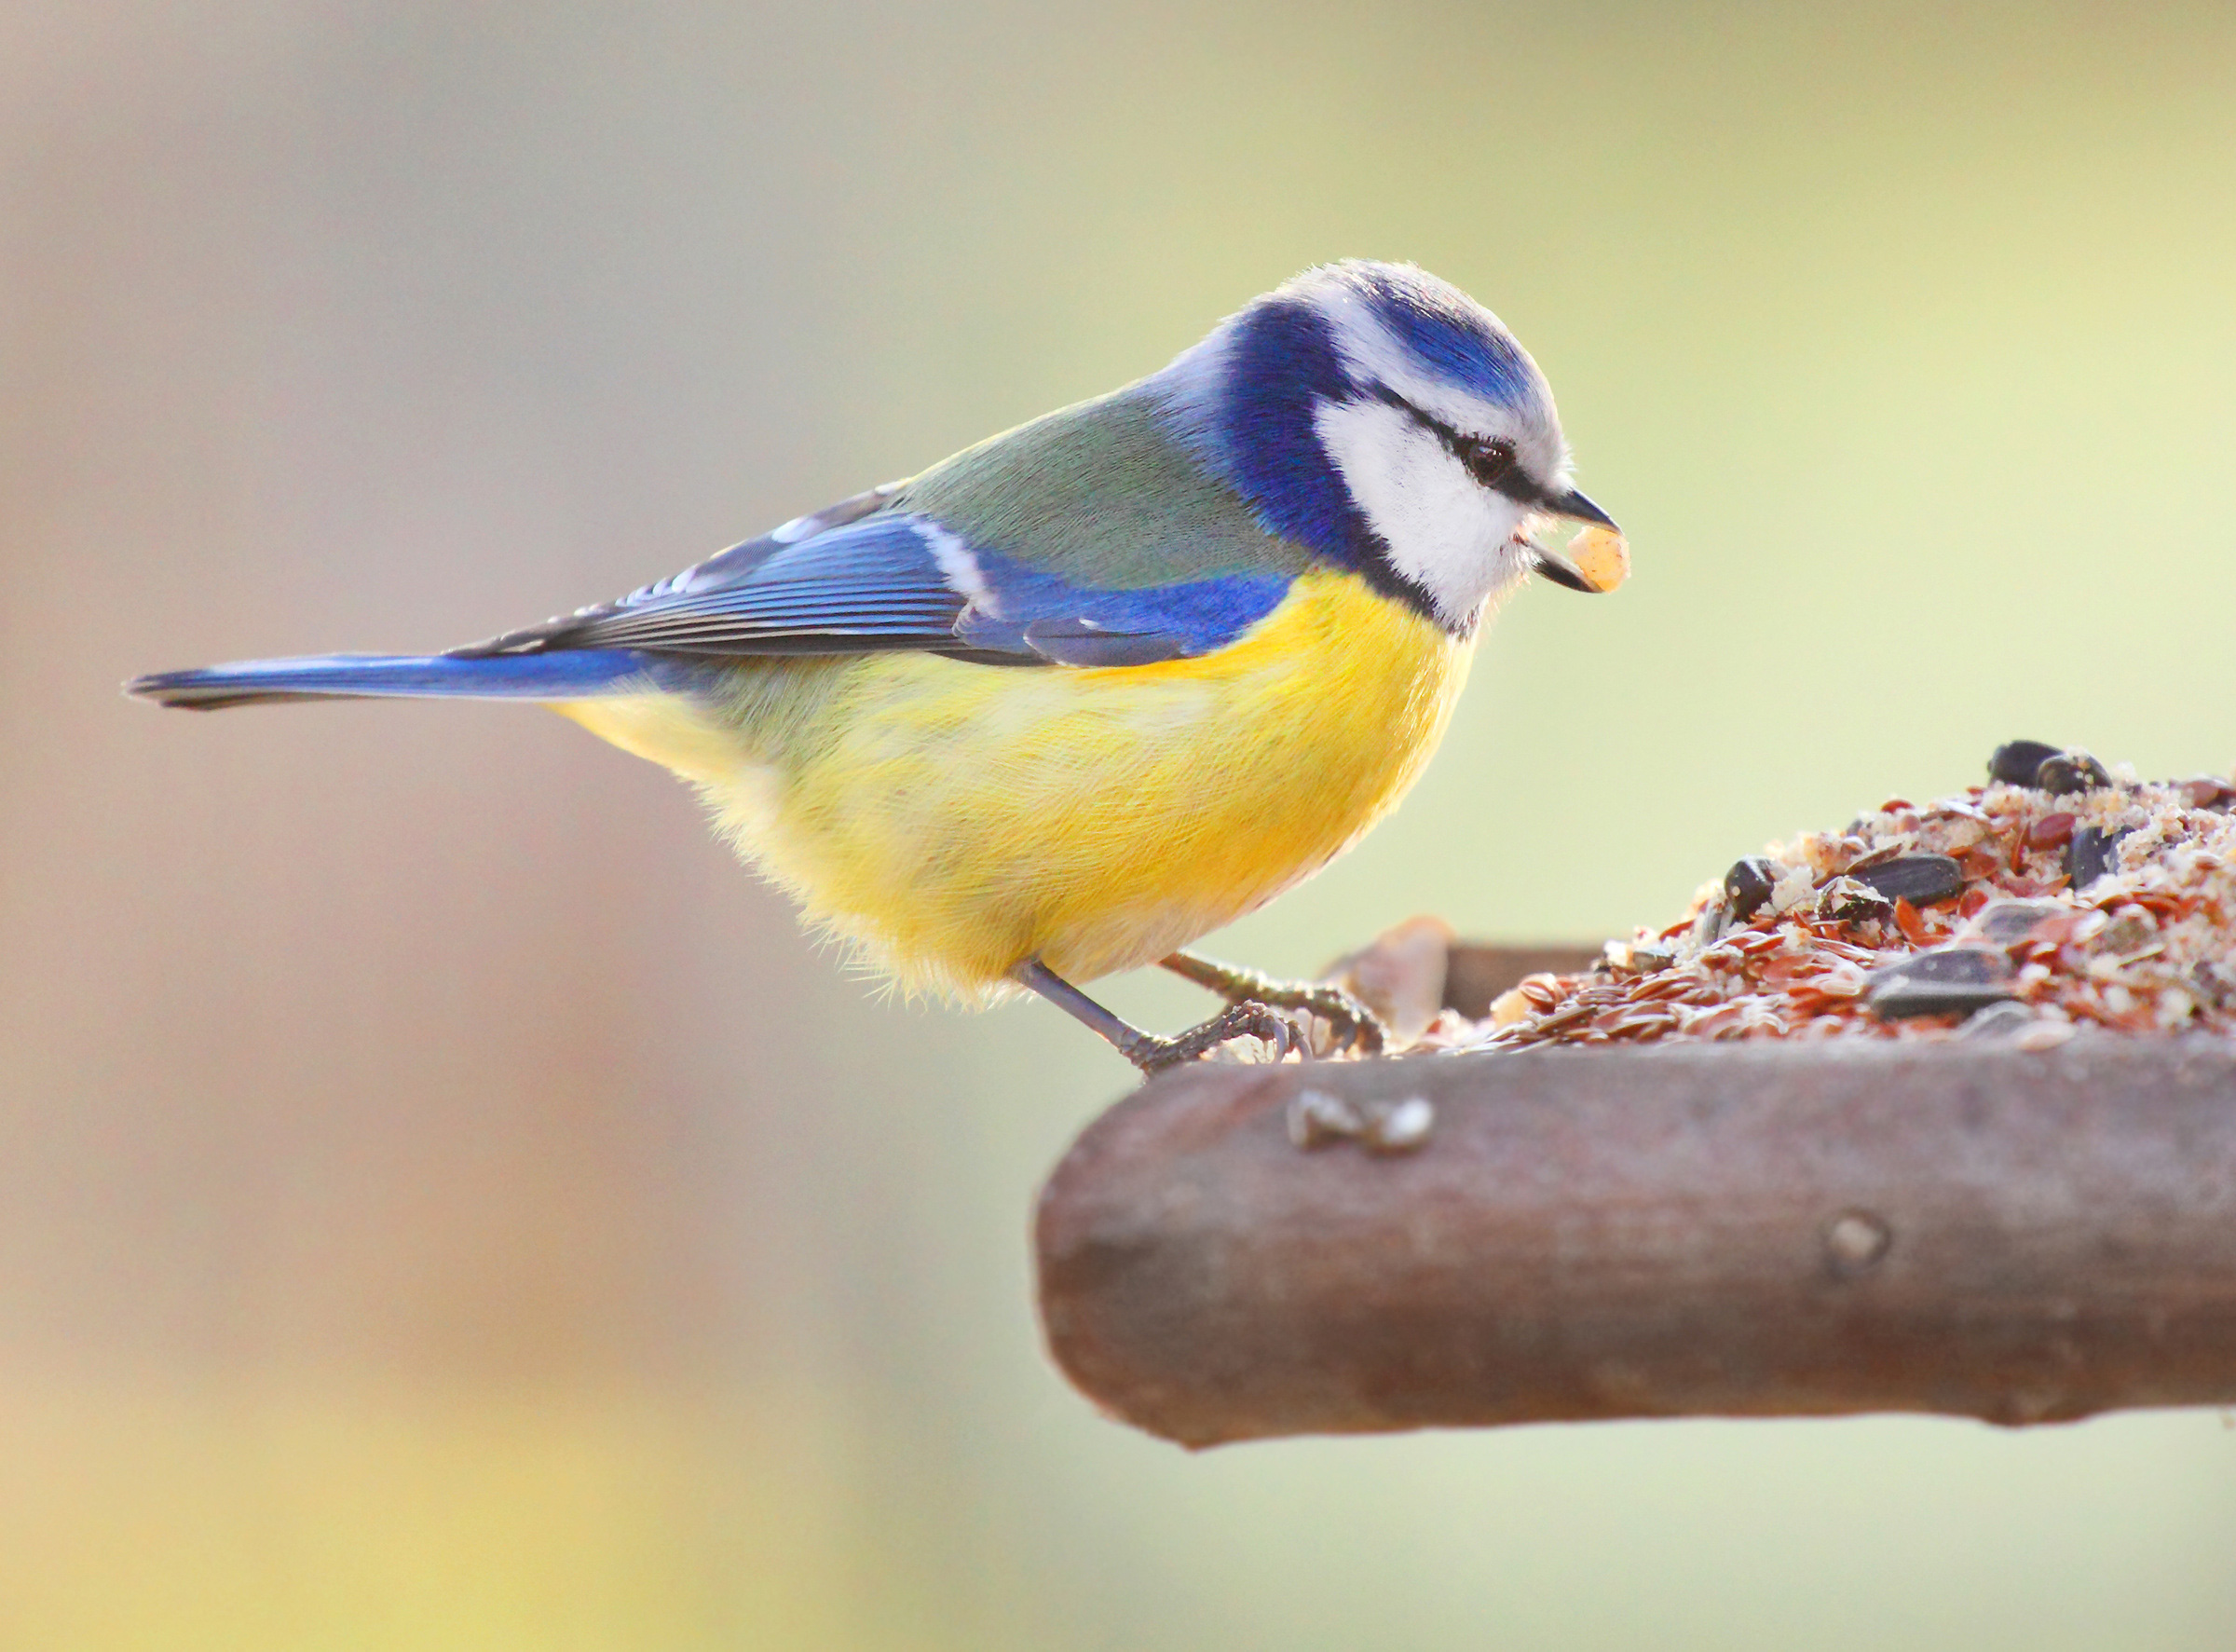 Quelles graines donner aux oiseaux pour les attirer au jardin